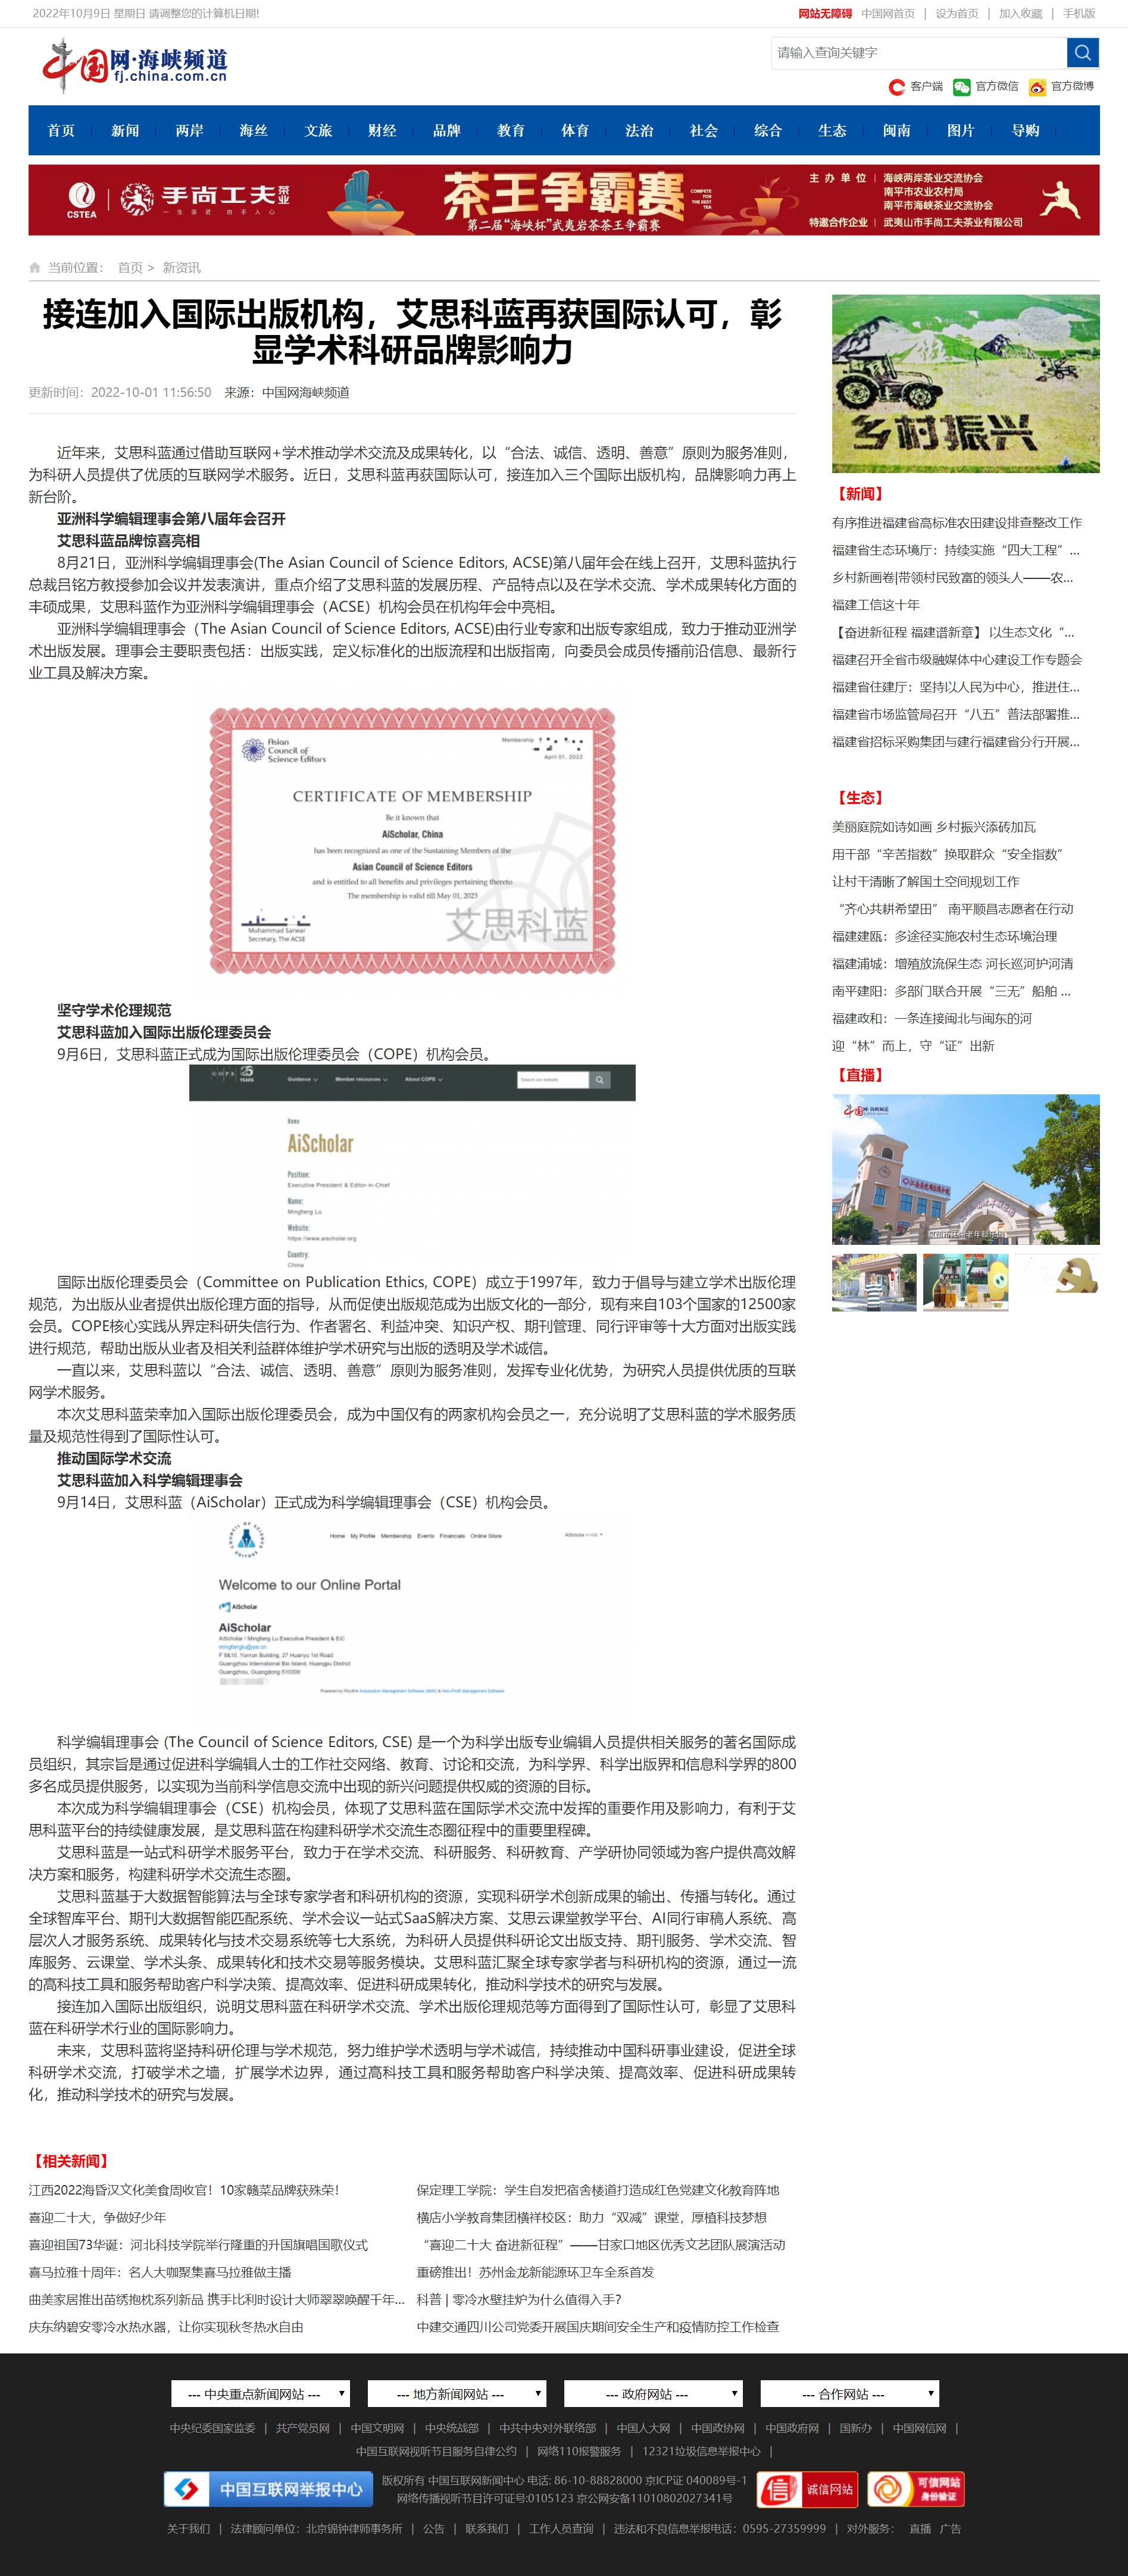 接连加入国际出版机构，艾思科蓝再获国际认可，彰显学术科研品牌影响力-中国网海峡频道.png